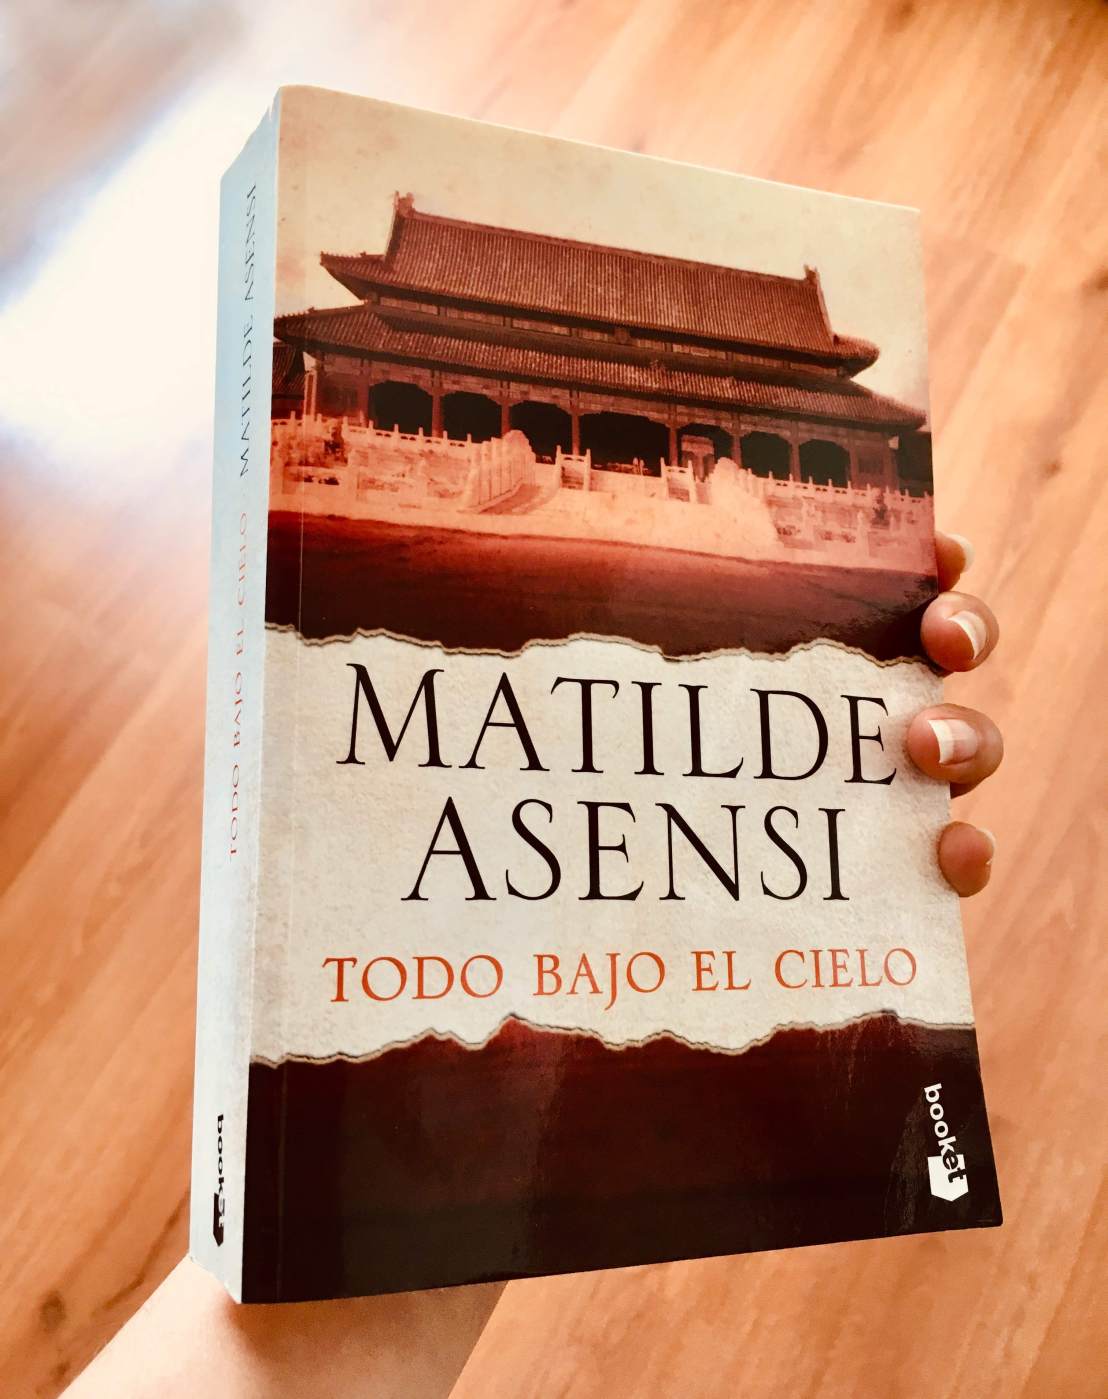 Portada del libro "Todo bajo el cielo" de Matilde Asensi. (Foto: Sandra Ramírez Checnes)